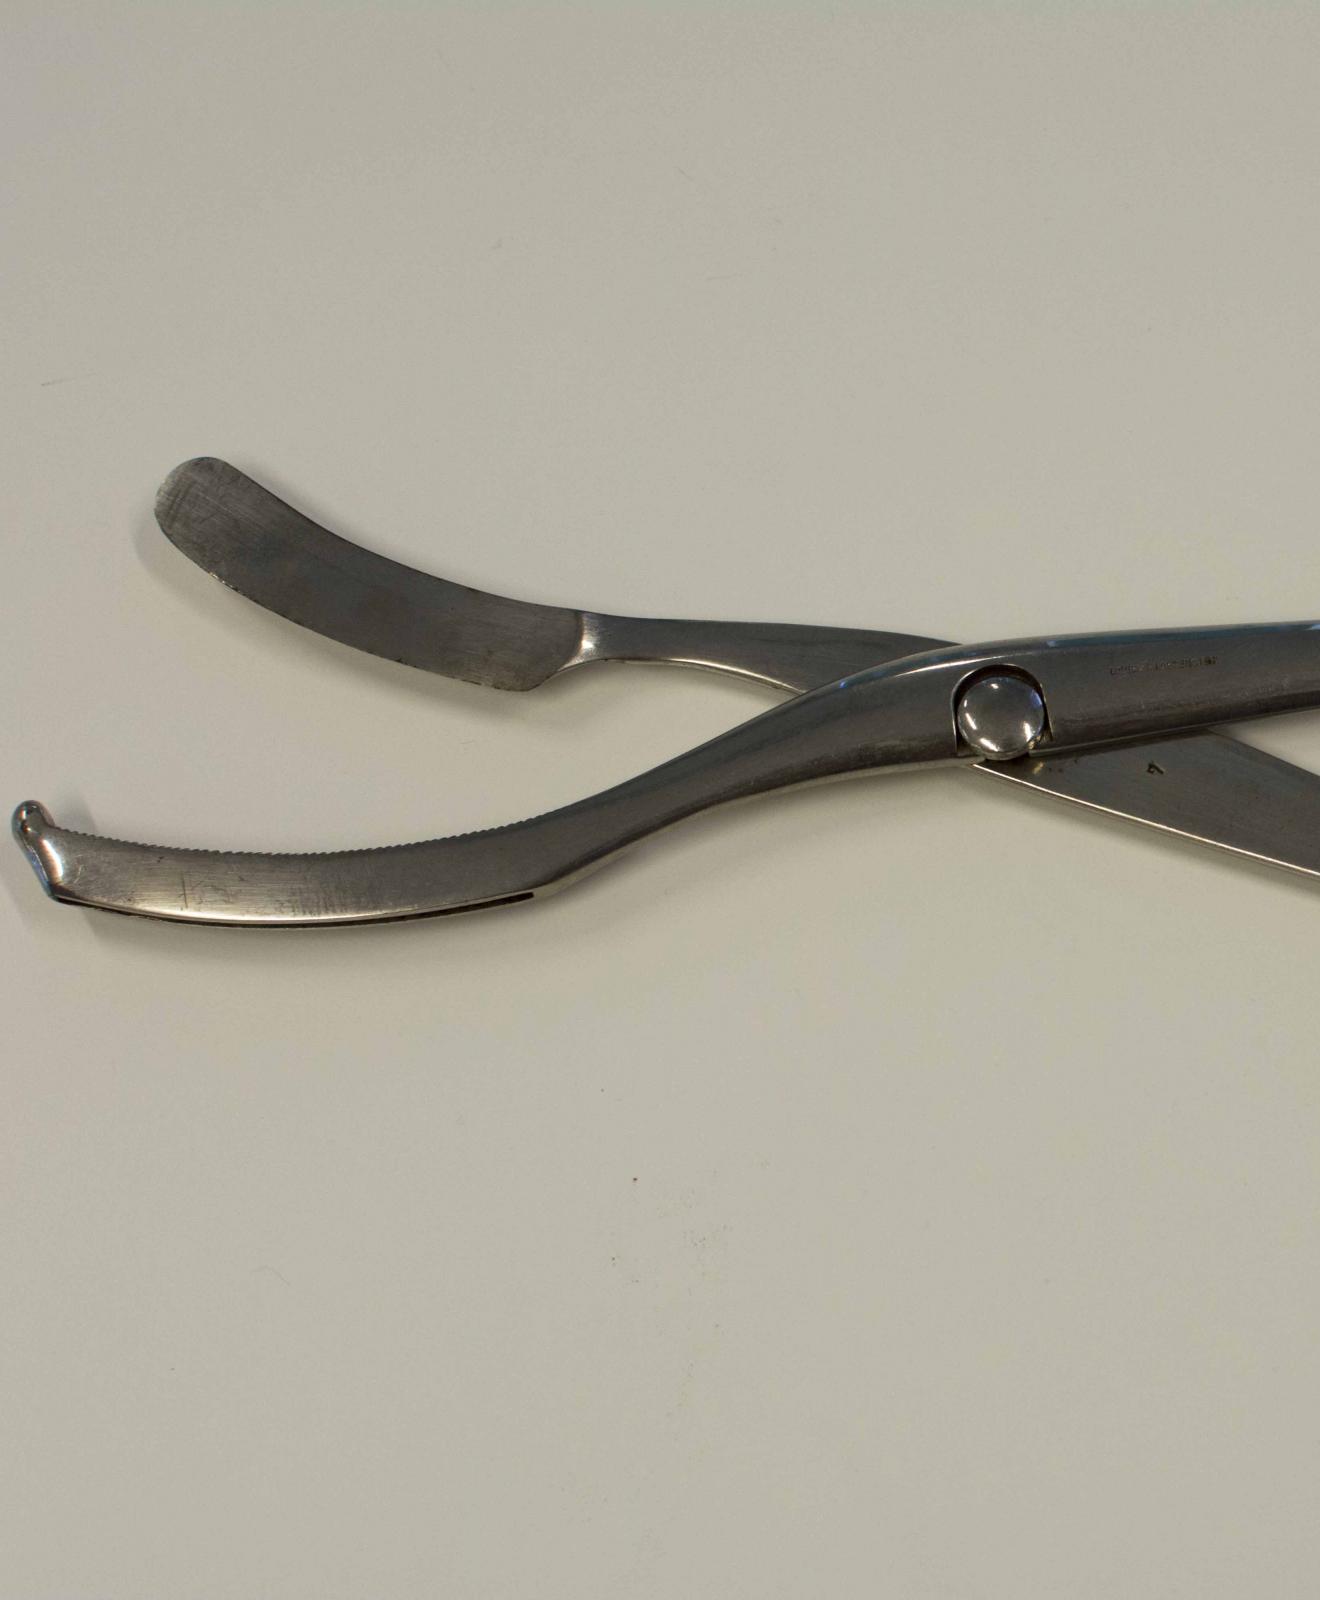 Instrumento metálico con forma de tijera, empuñadura simple y cabeza cortante terminada en forma curva en uno de sus extremos